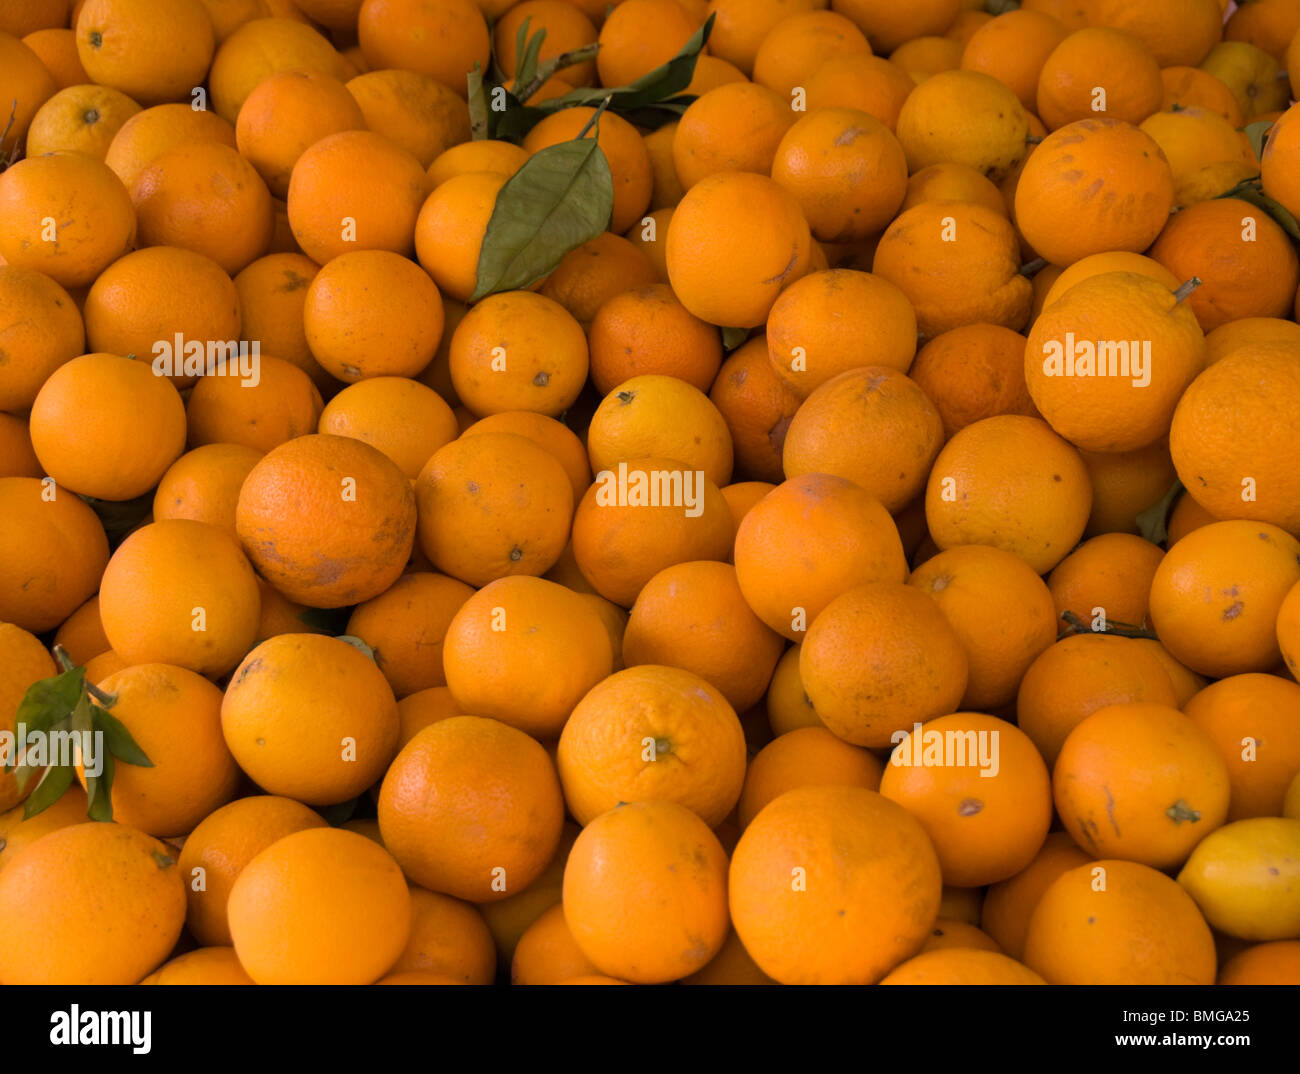 Turkey Antalya - Manavgat market fruit - oranges Stock Photo